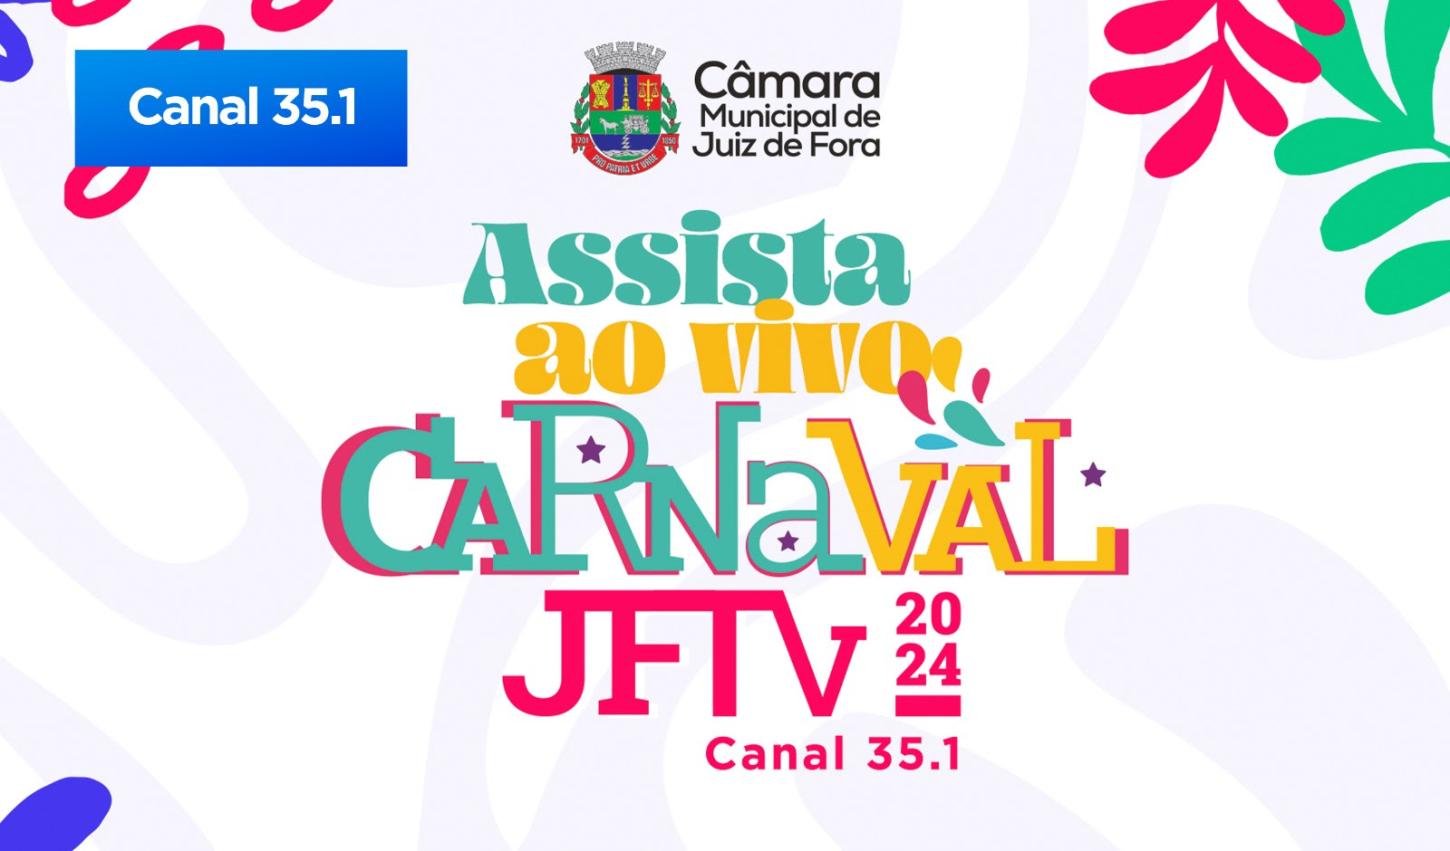 JFTV transmitirá ao vivo os Desfiles das Escolas de Samba de Juiz de Fora neste fim de semana